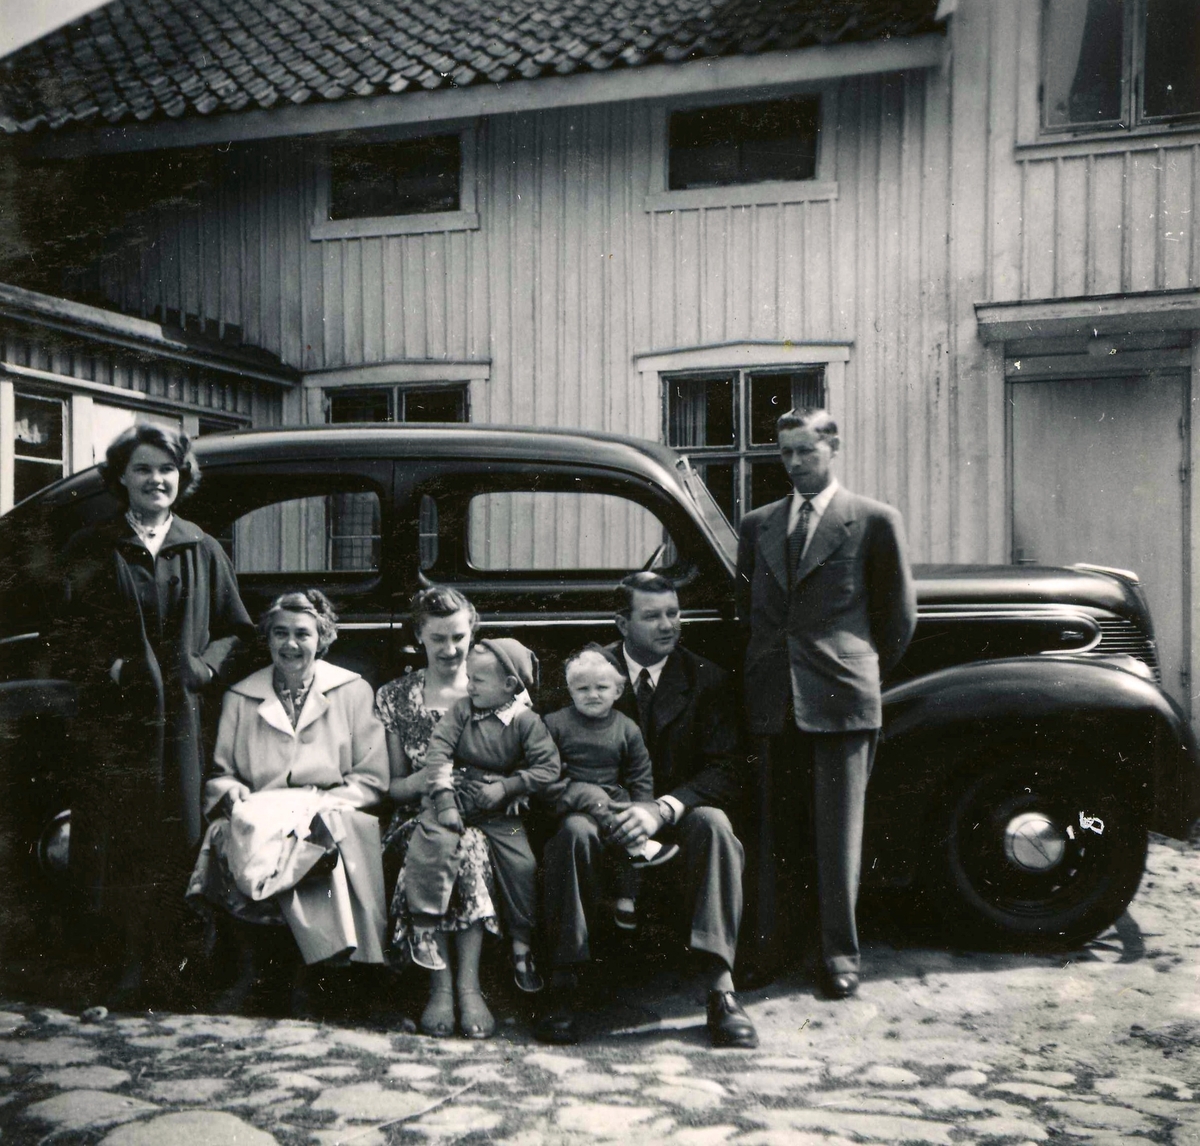 Sju personer står samlade framför en bil vid Ekans gård, Ekan 1:1 år 1953. Från vänster: 1. Eva Svensson (född 1936, gift Johansson, dotter till nr 7). 2. Elsa Svensson (1901 - 1990, gift med nr 7), gårdens ägare. 3. Edit Melin (1918 - 2000), Kyrkbacken. 4. sonen Lars-Åke Melin (född 1948), Kyrkbacken. 5. sonen Sven-Olof Melin (född 1951), Kyrkbacken. 6. Åke Melin (1913 - 1970), Kyrkbacken. 7. Rolf Svensson (född i Släp 1909, avliden i Kållered 1989), gårdens ägare och brukare.